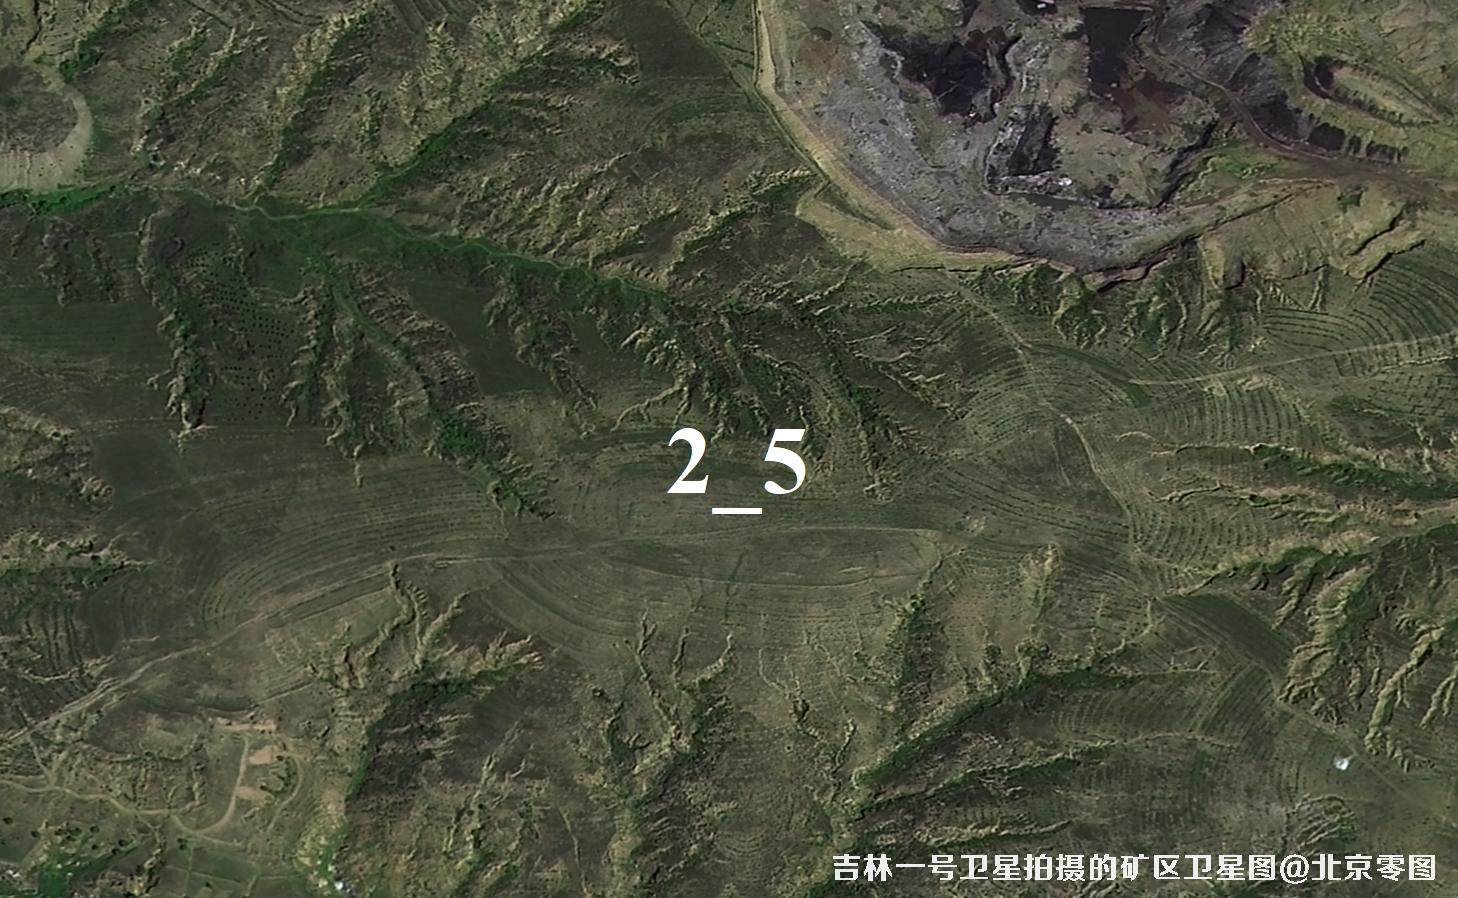 吉林一号卫星拍摄的内蒙古矿区卫星图